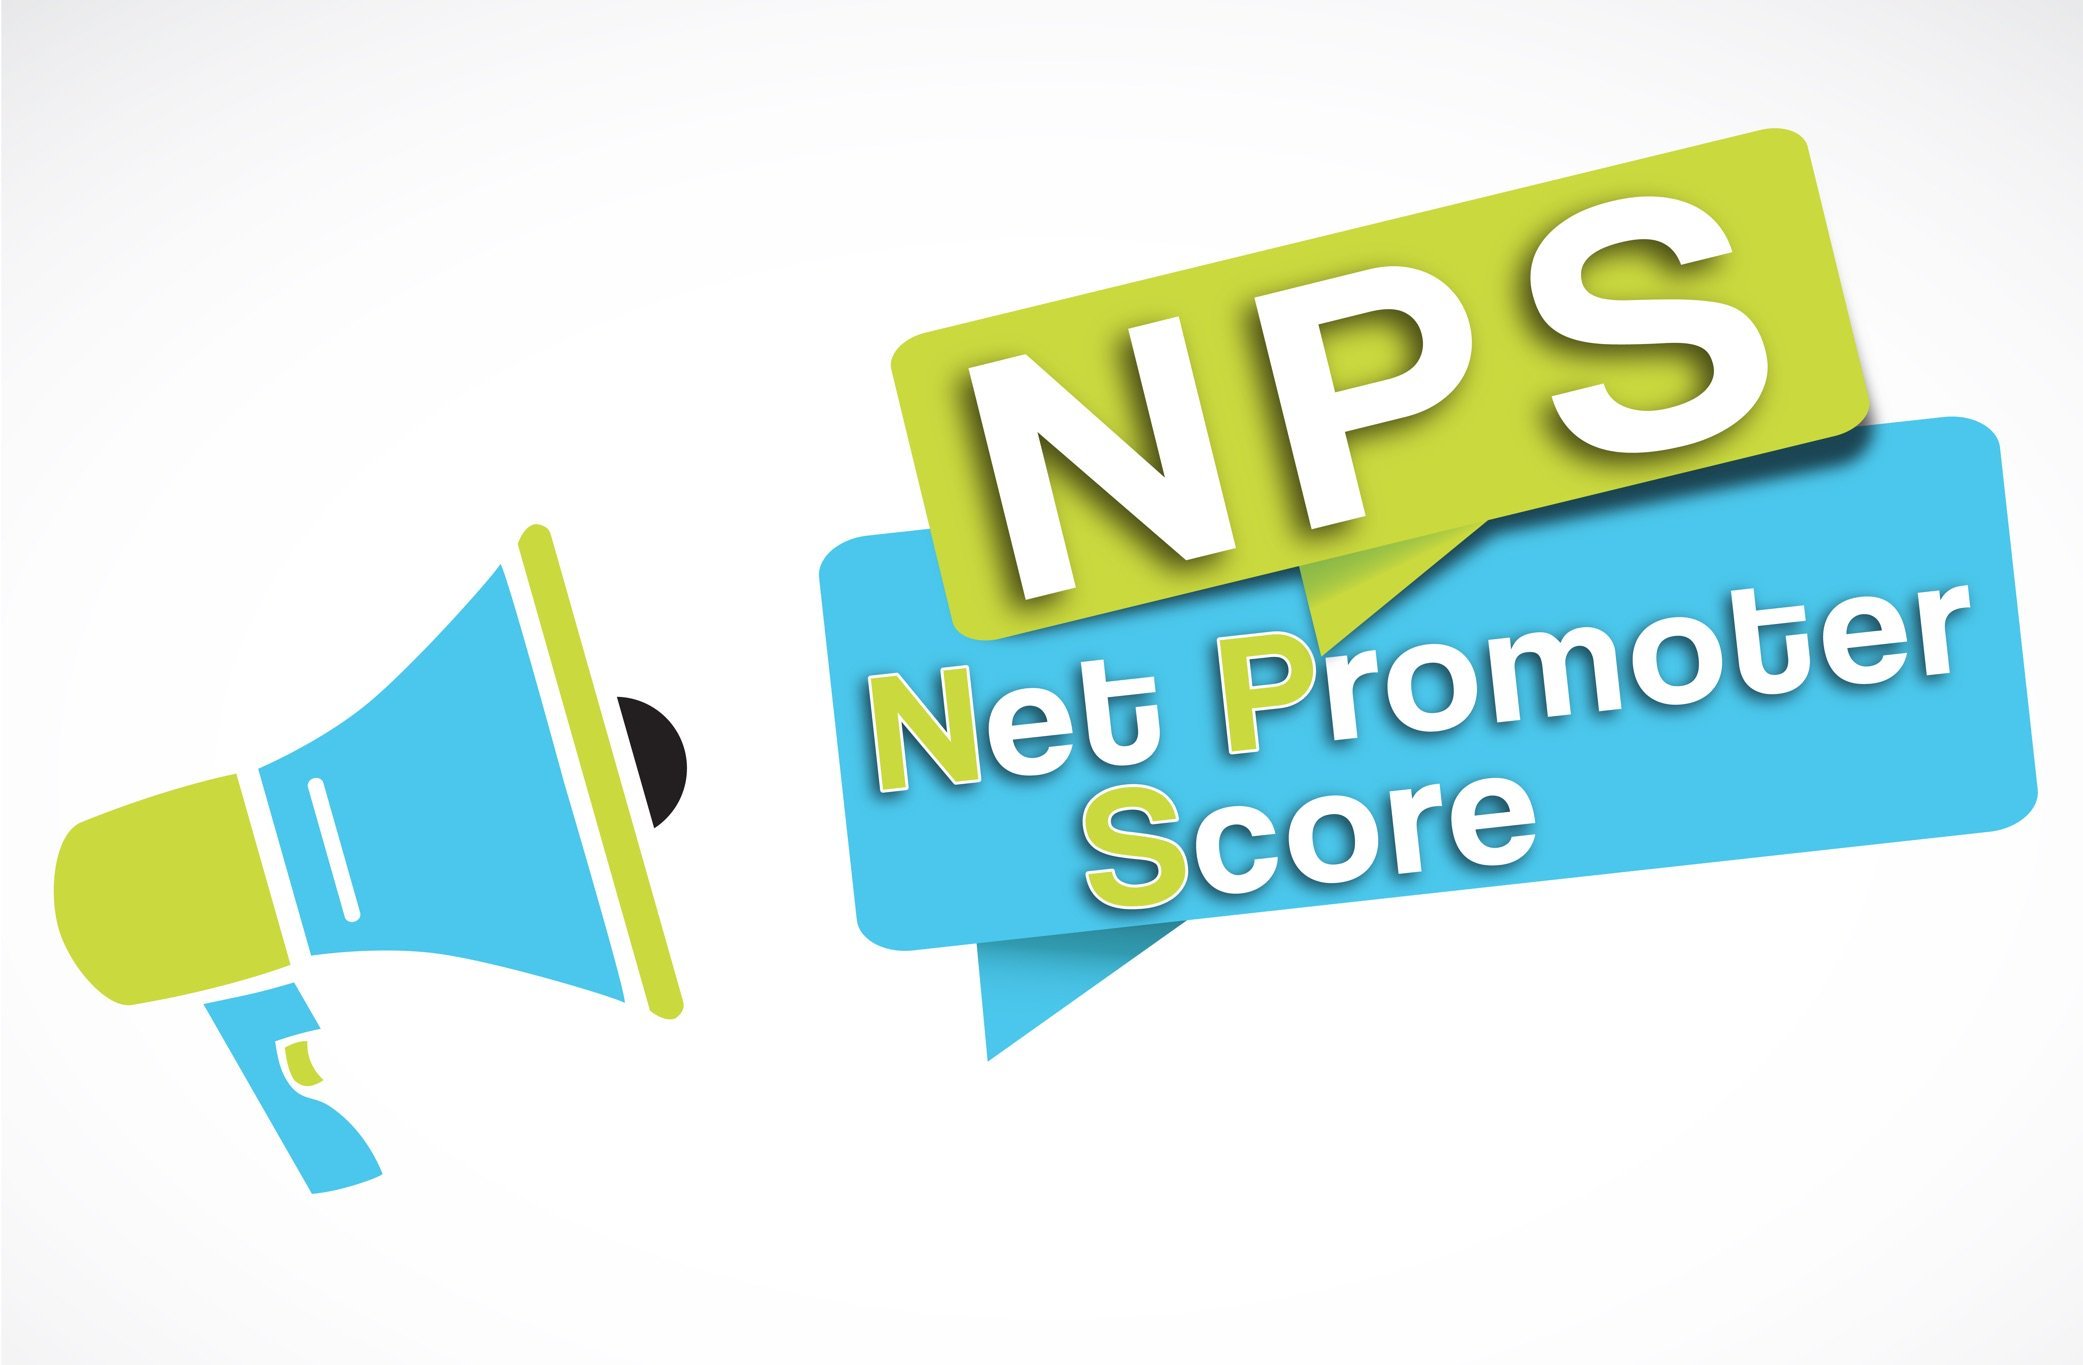 Comment utiliser le Net Promoter Score en fidélisation client